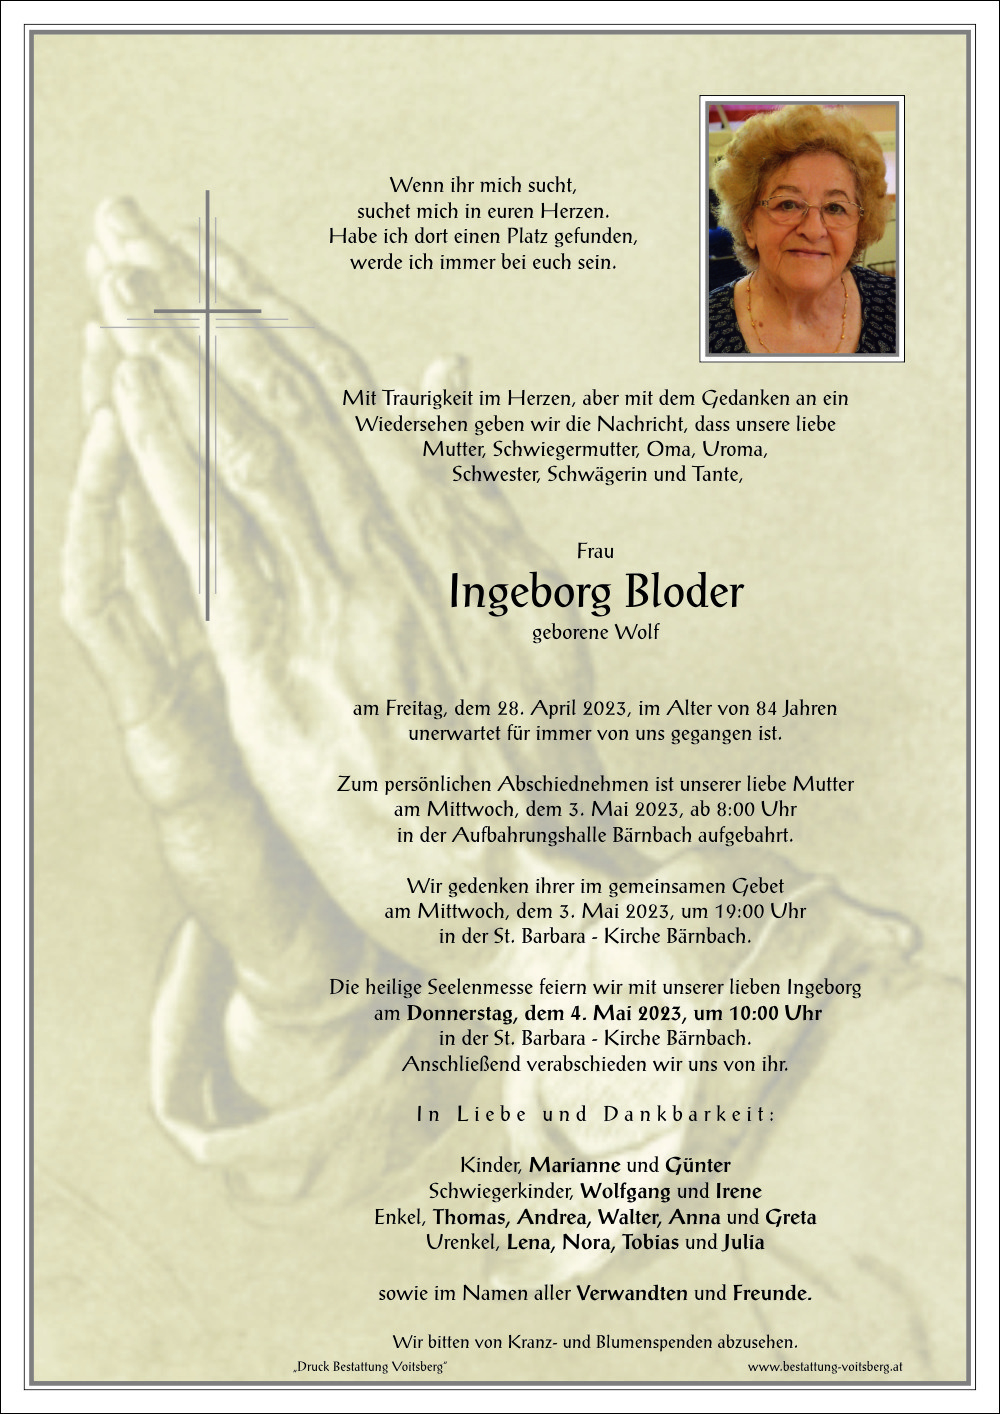 Ingeborg Bloder